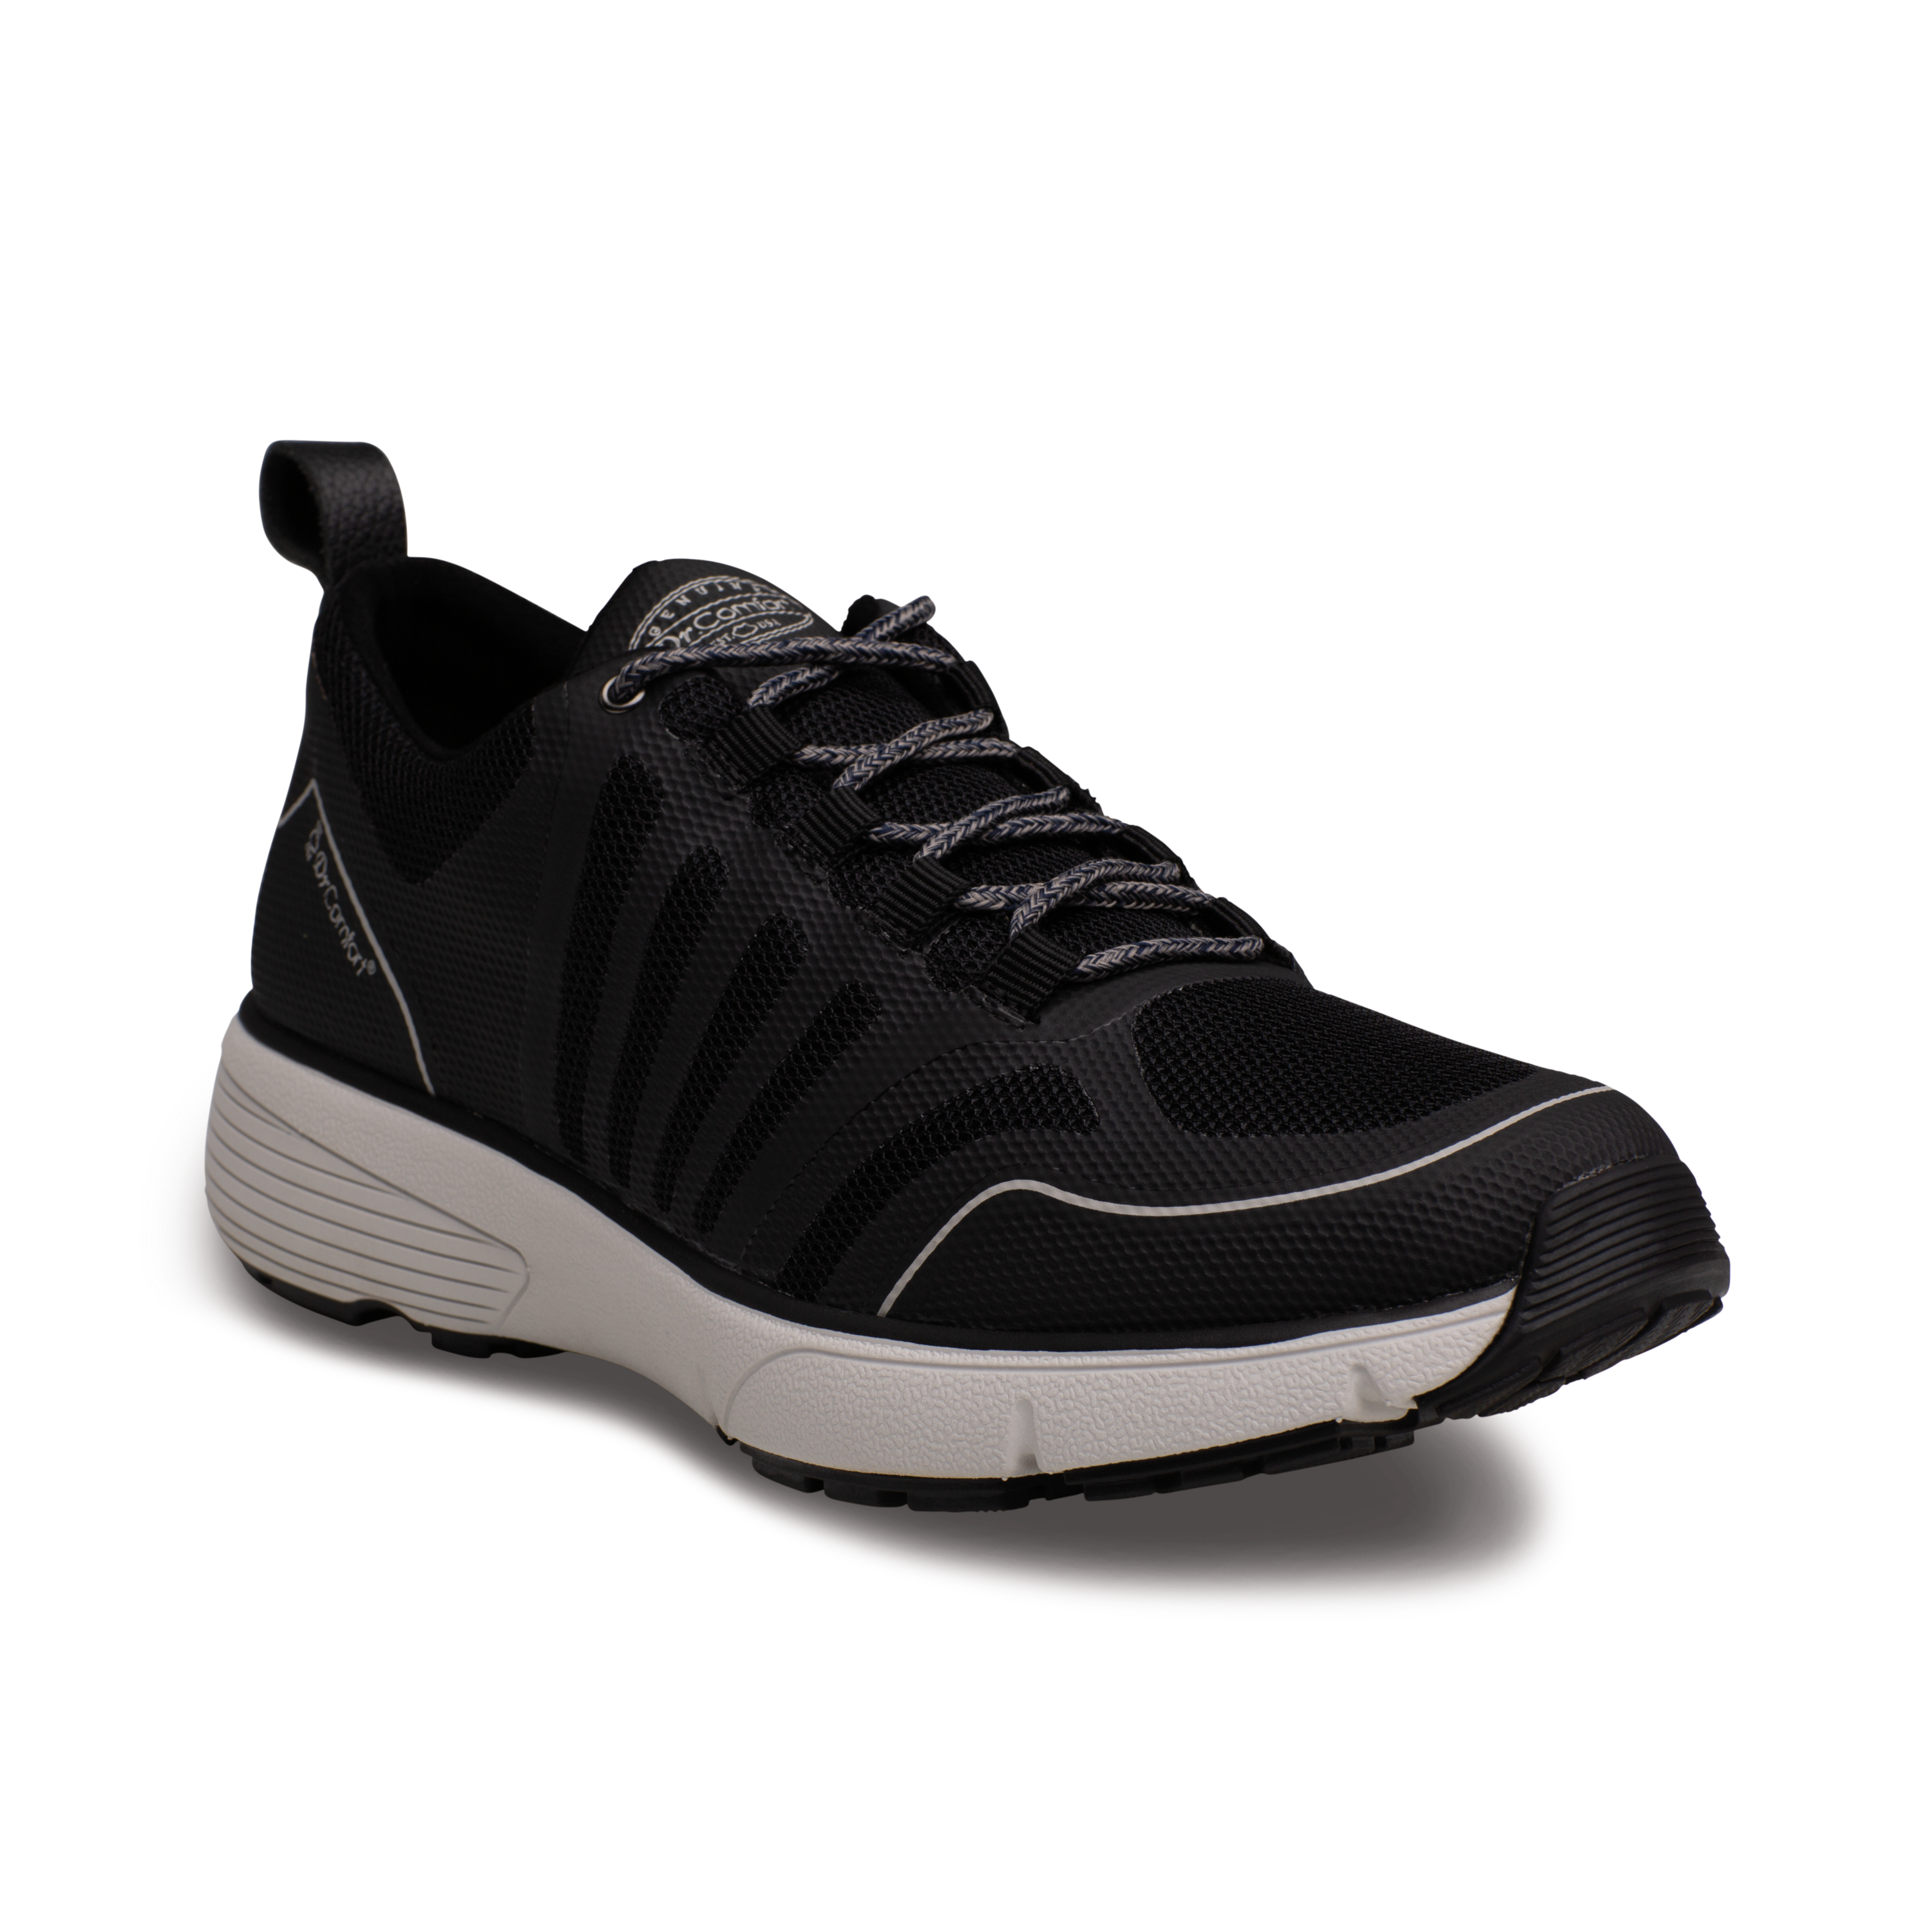 Produktbild DR. COMFORT® Gordon schwarz, Orthopädische Schuhe, Leichter Aktivschuh mit stabilisierender und dämpfender Laufsohlenkonstruktion für einen sicheren Gang